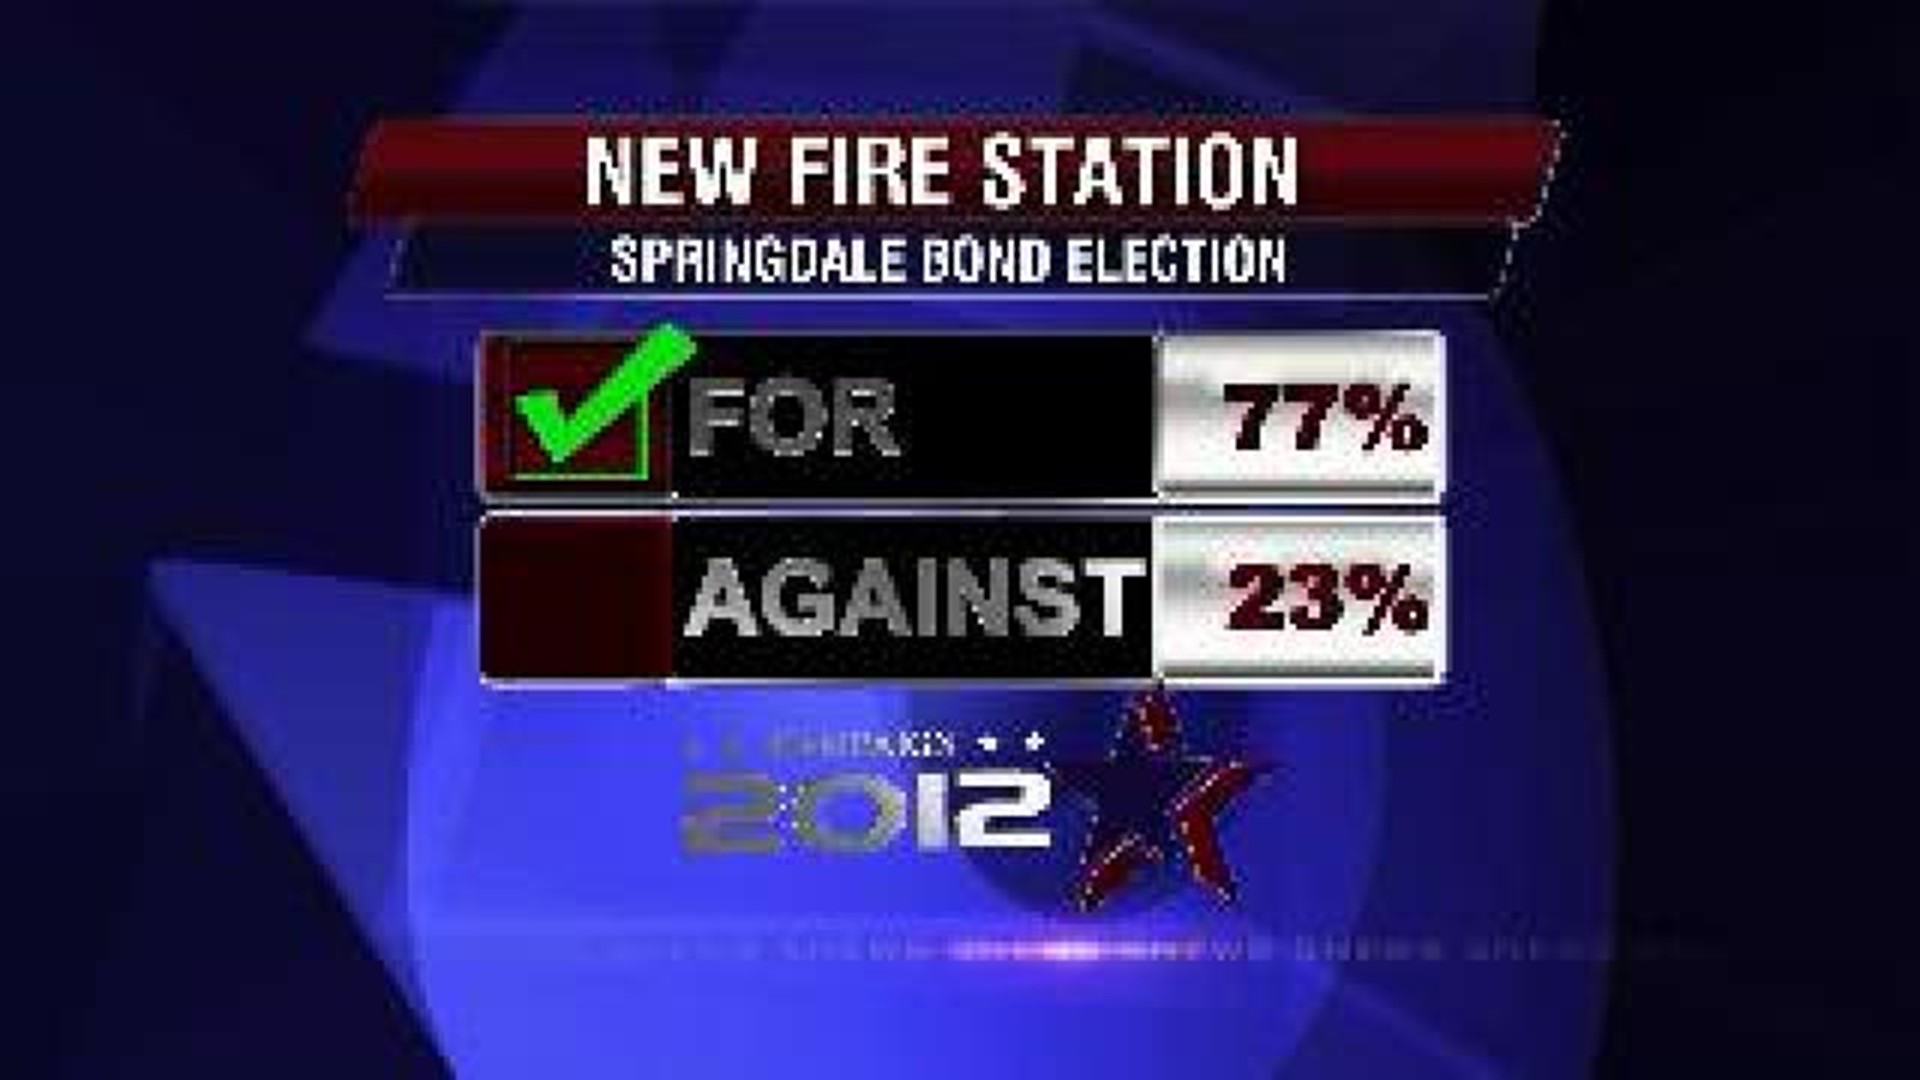 Landslide victory for Springdale Bonds